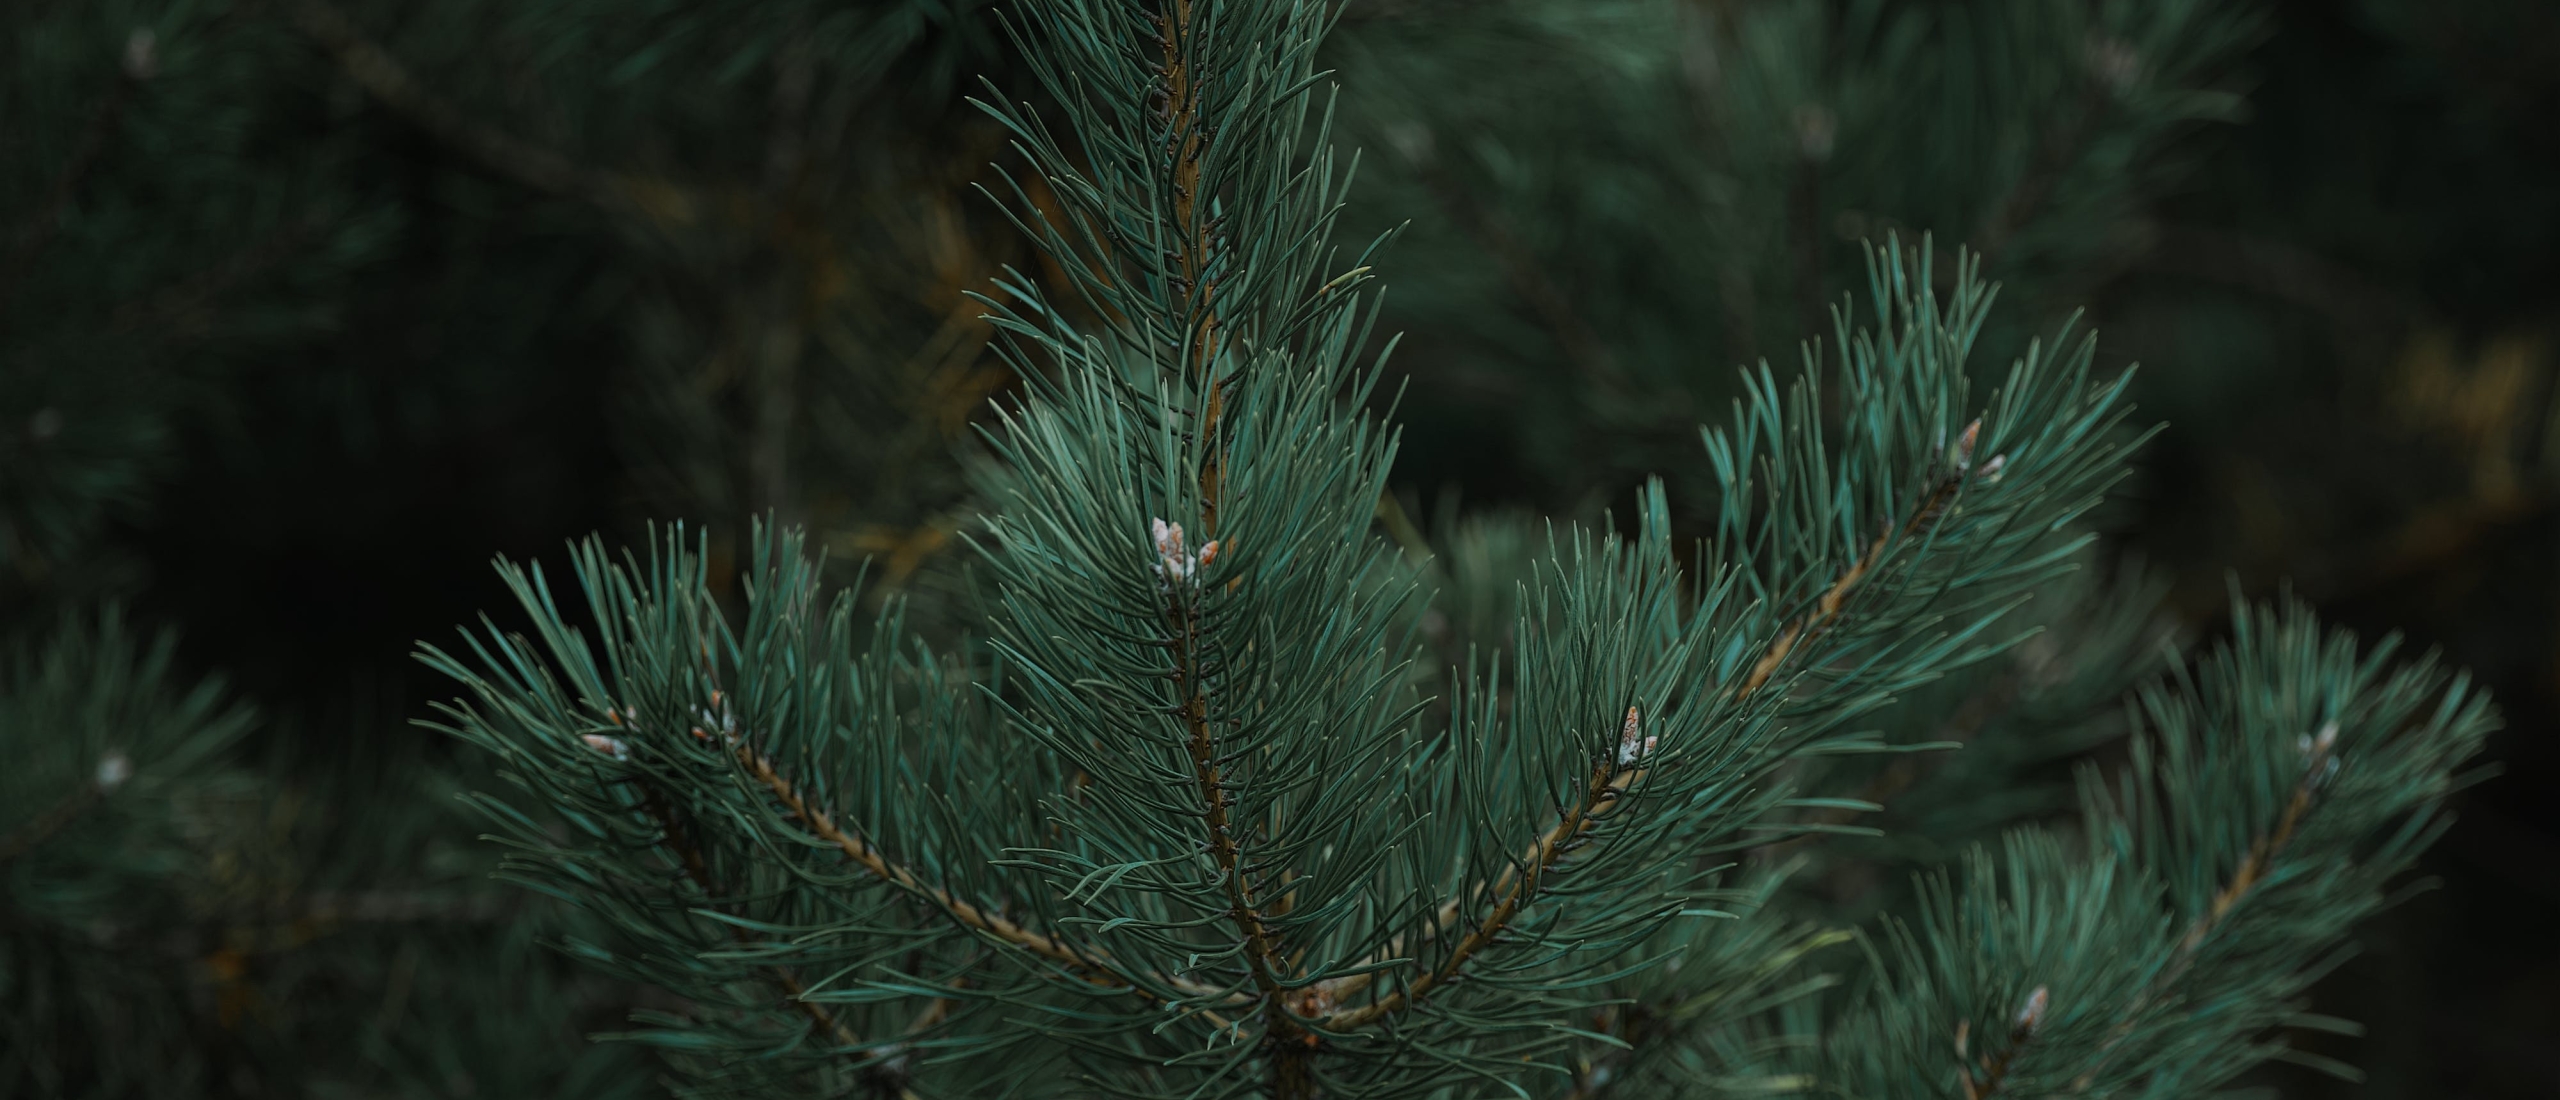 Kerstgroen Pinus, Abies, Nobilis; wat is eigenlijk het verschil?